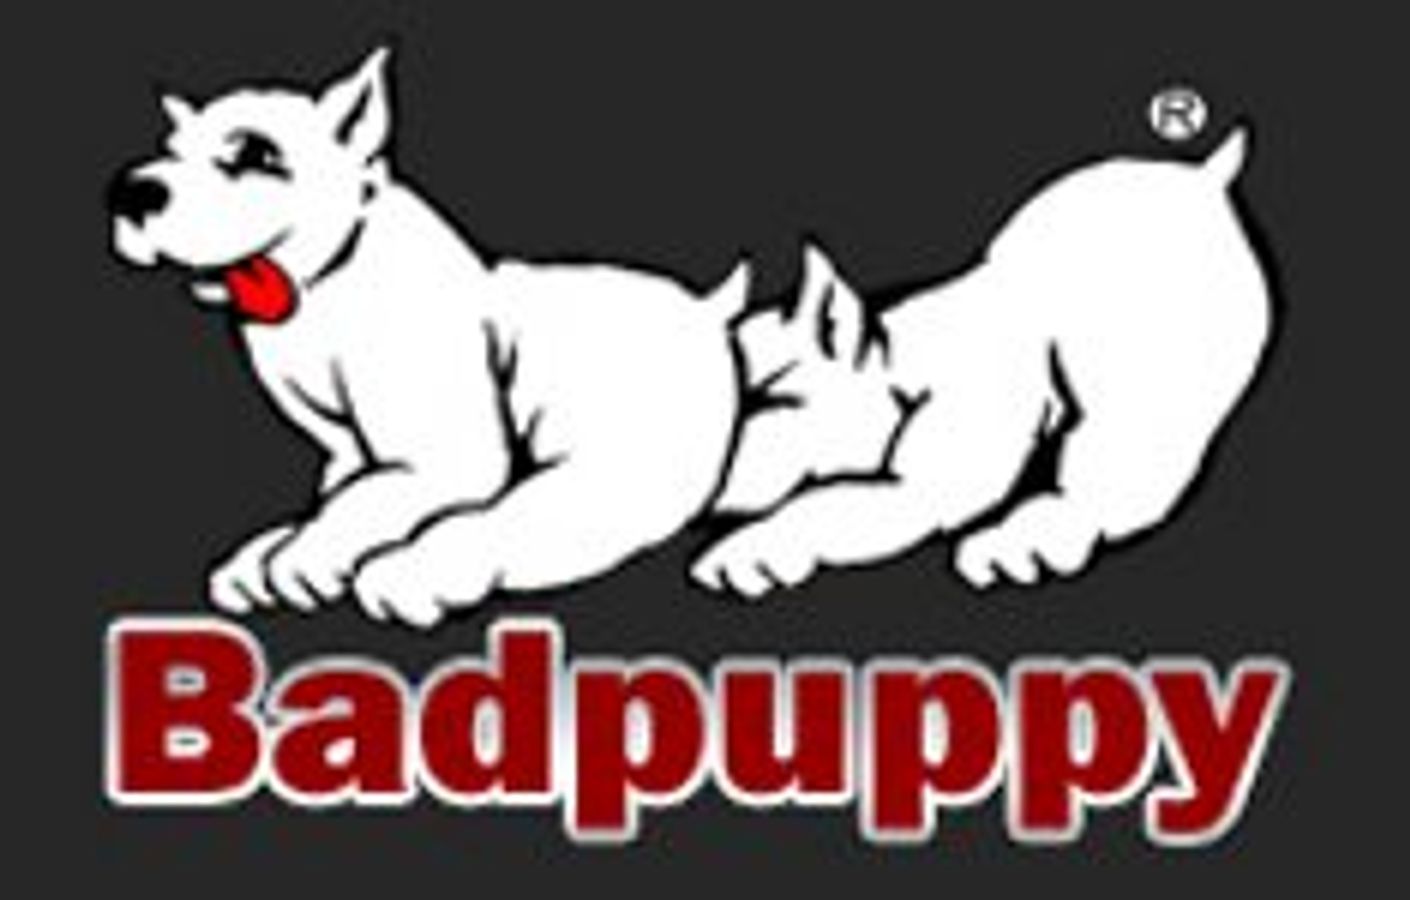 Badpuppy's Puppy Cash